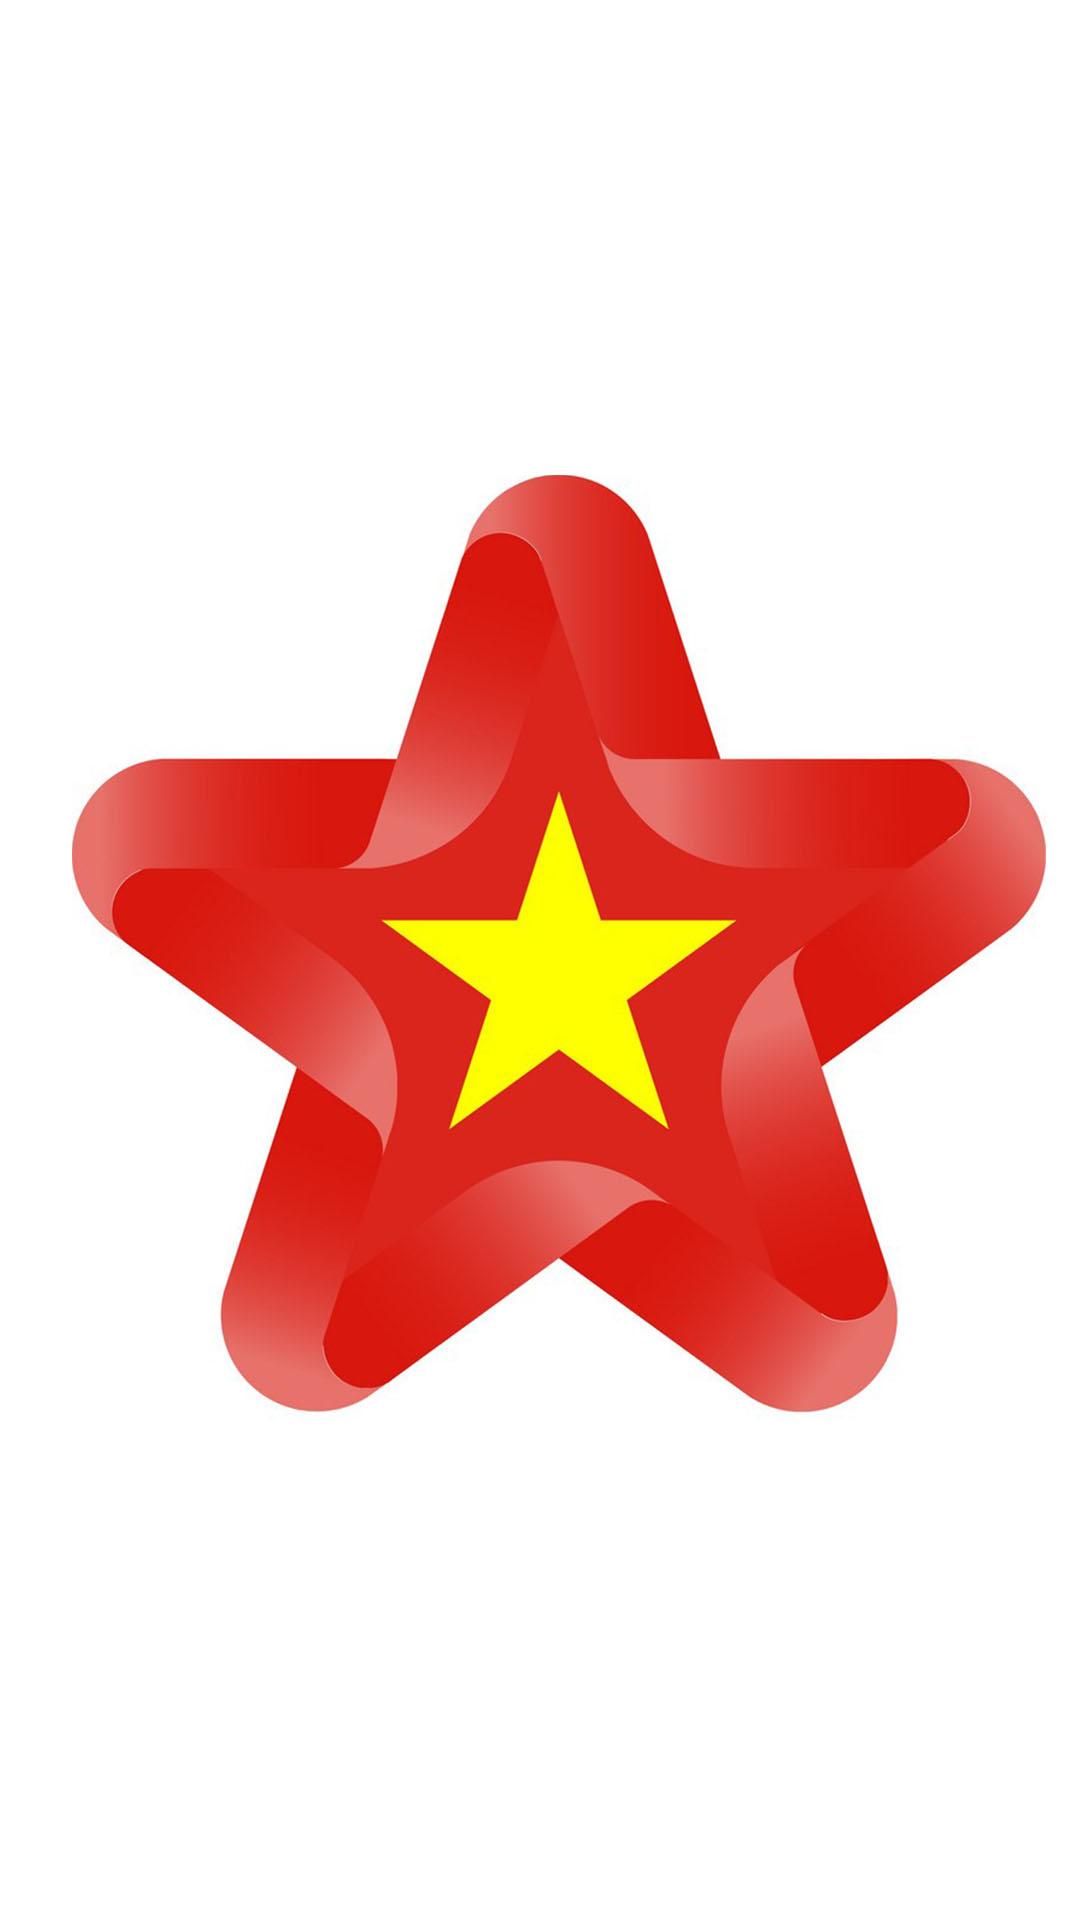 99 Hình nền lá cờ Việt Nam cho điện thoại iphone android   pgddttramtaueduvn